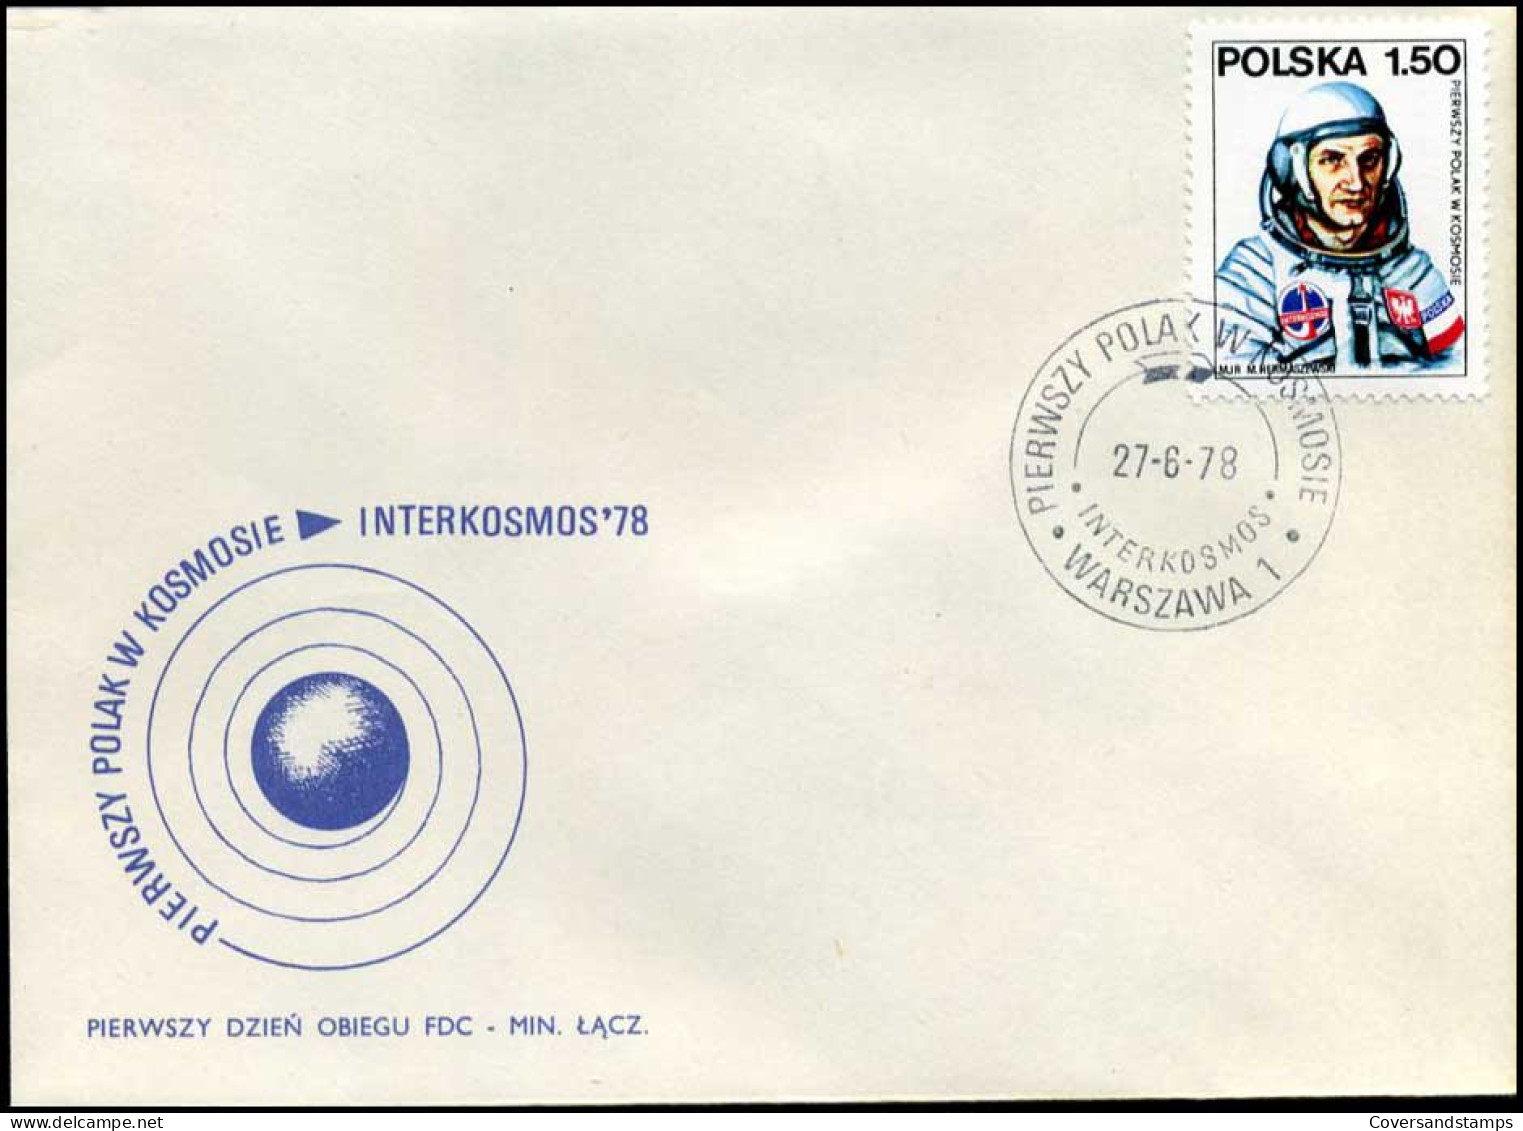 Polen - FDC -  Interkosmos '78 - FDC